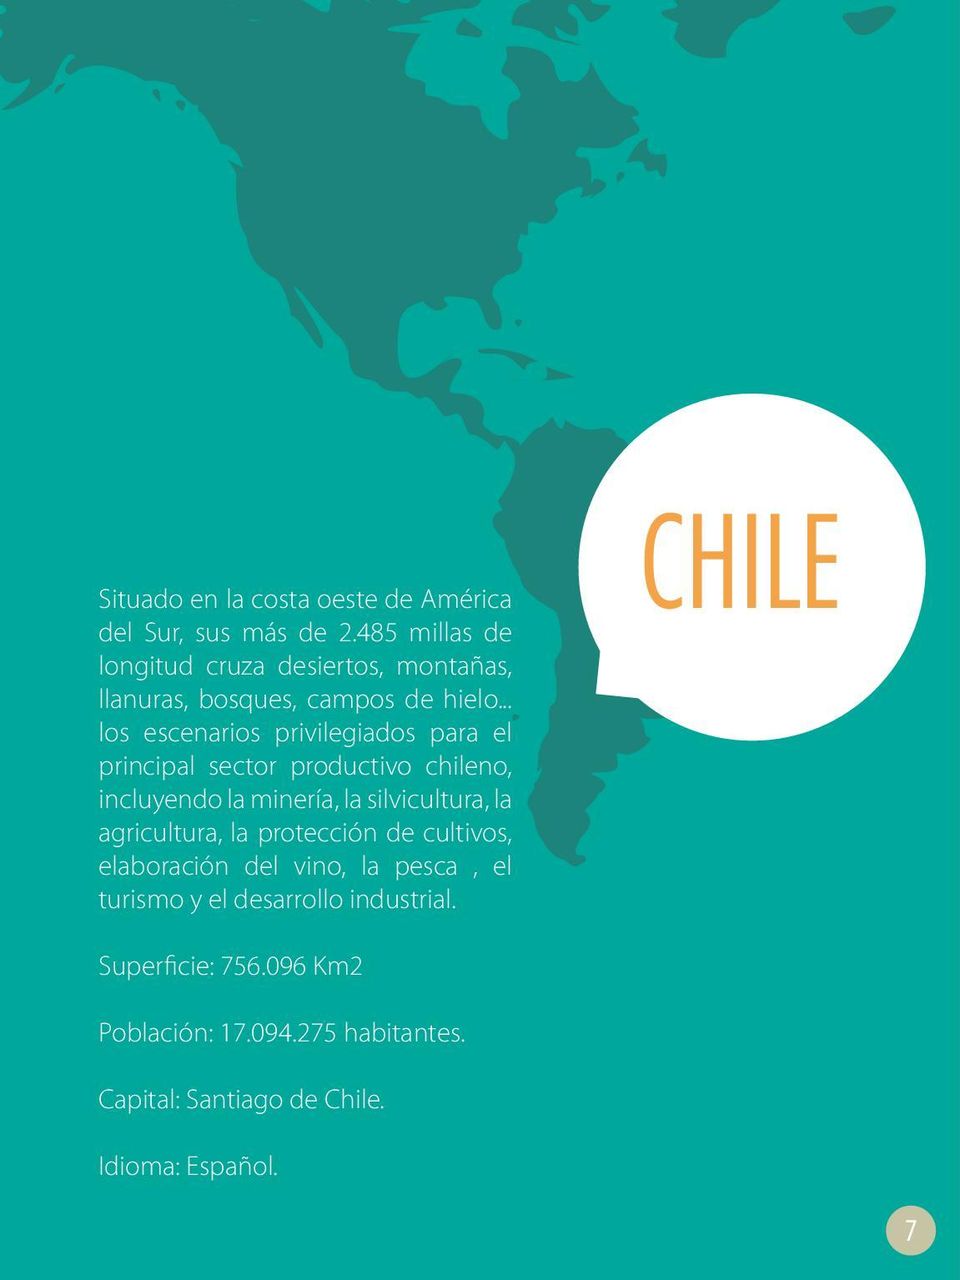 .. los escenarios privilegiados para el principal sector productivo chileno, incluyendo la minería, la silvicultura, la